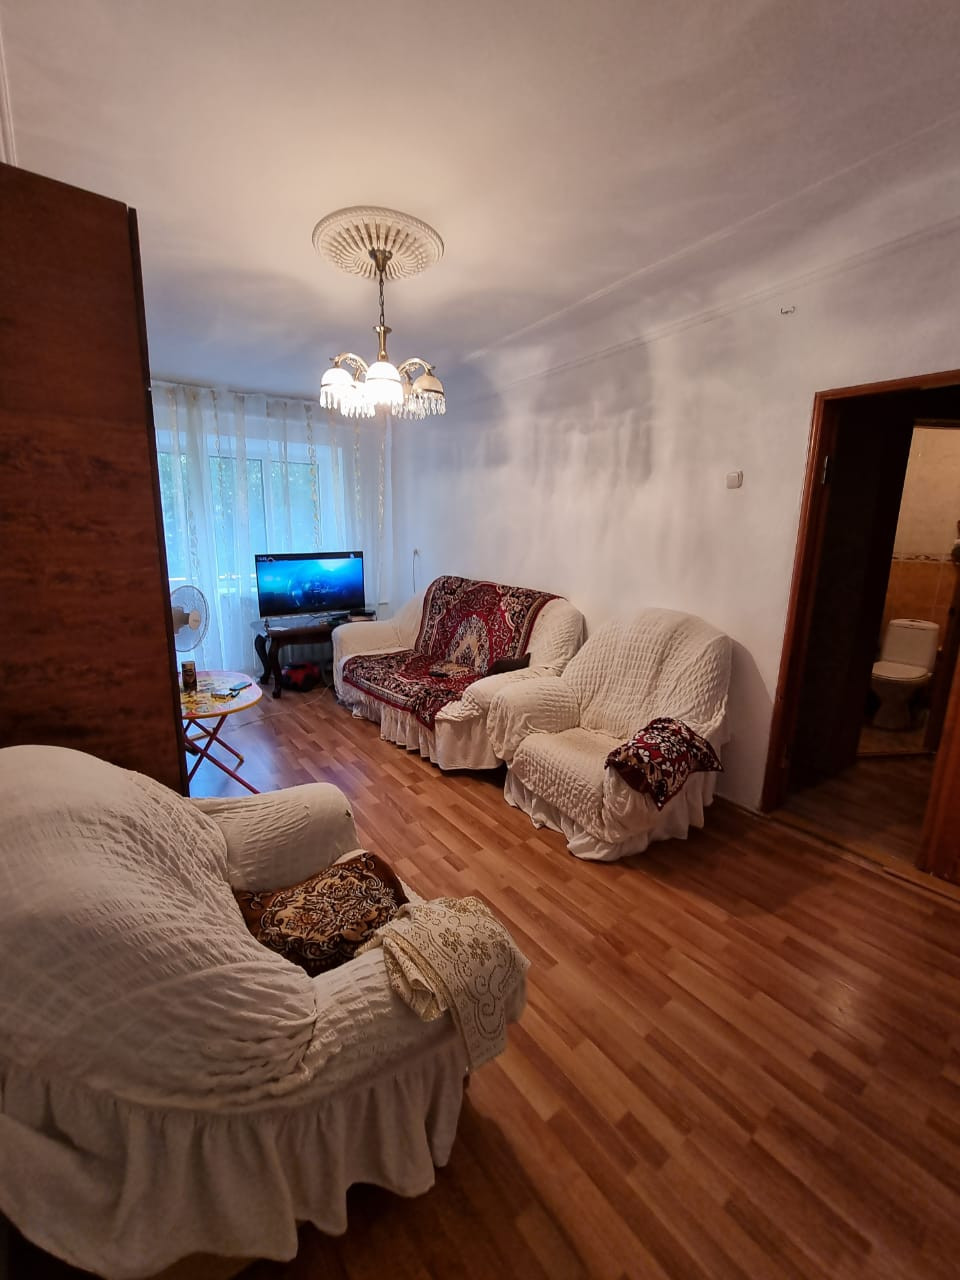 Снять квартиру в Карачаево. Квартиры в черкесске недорого